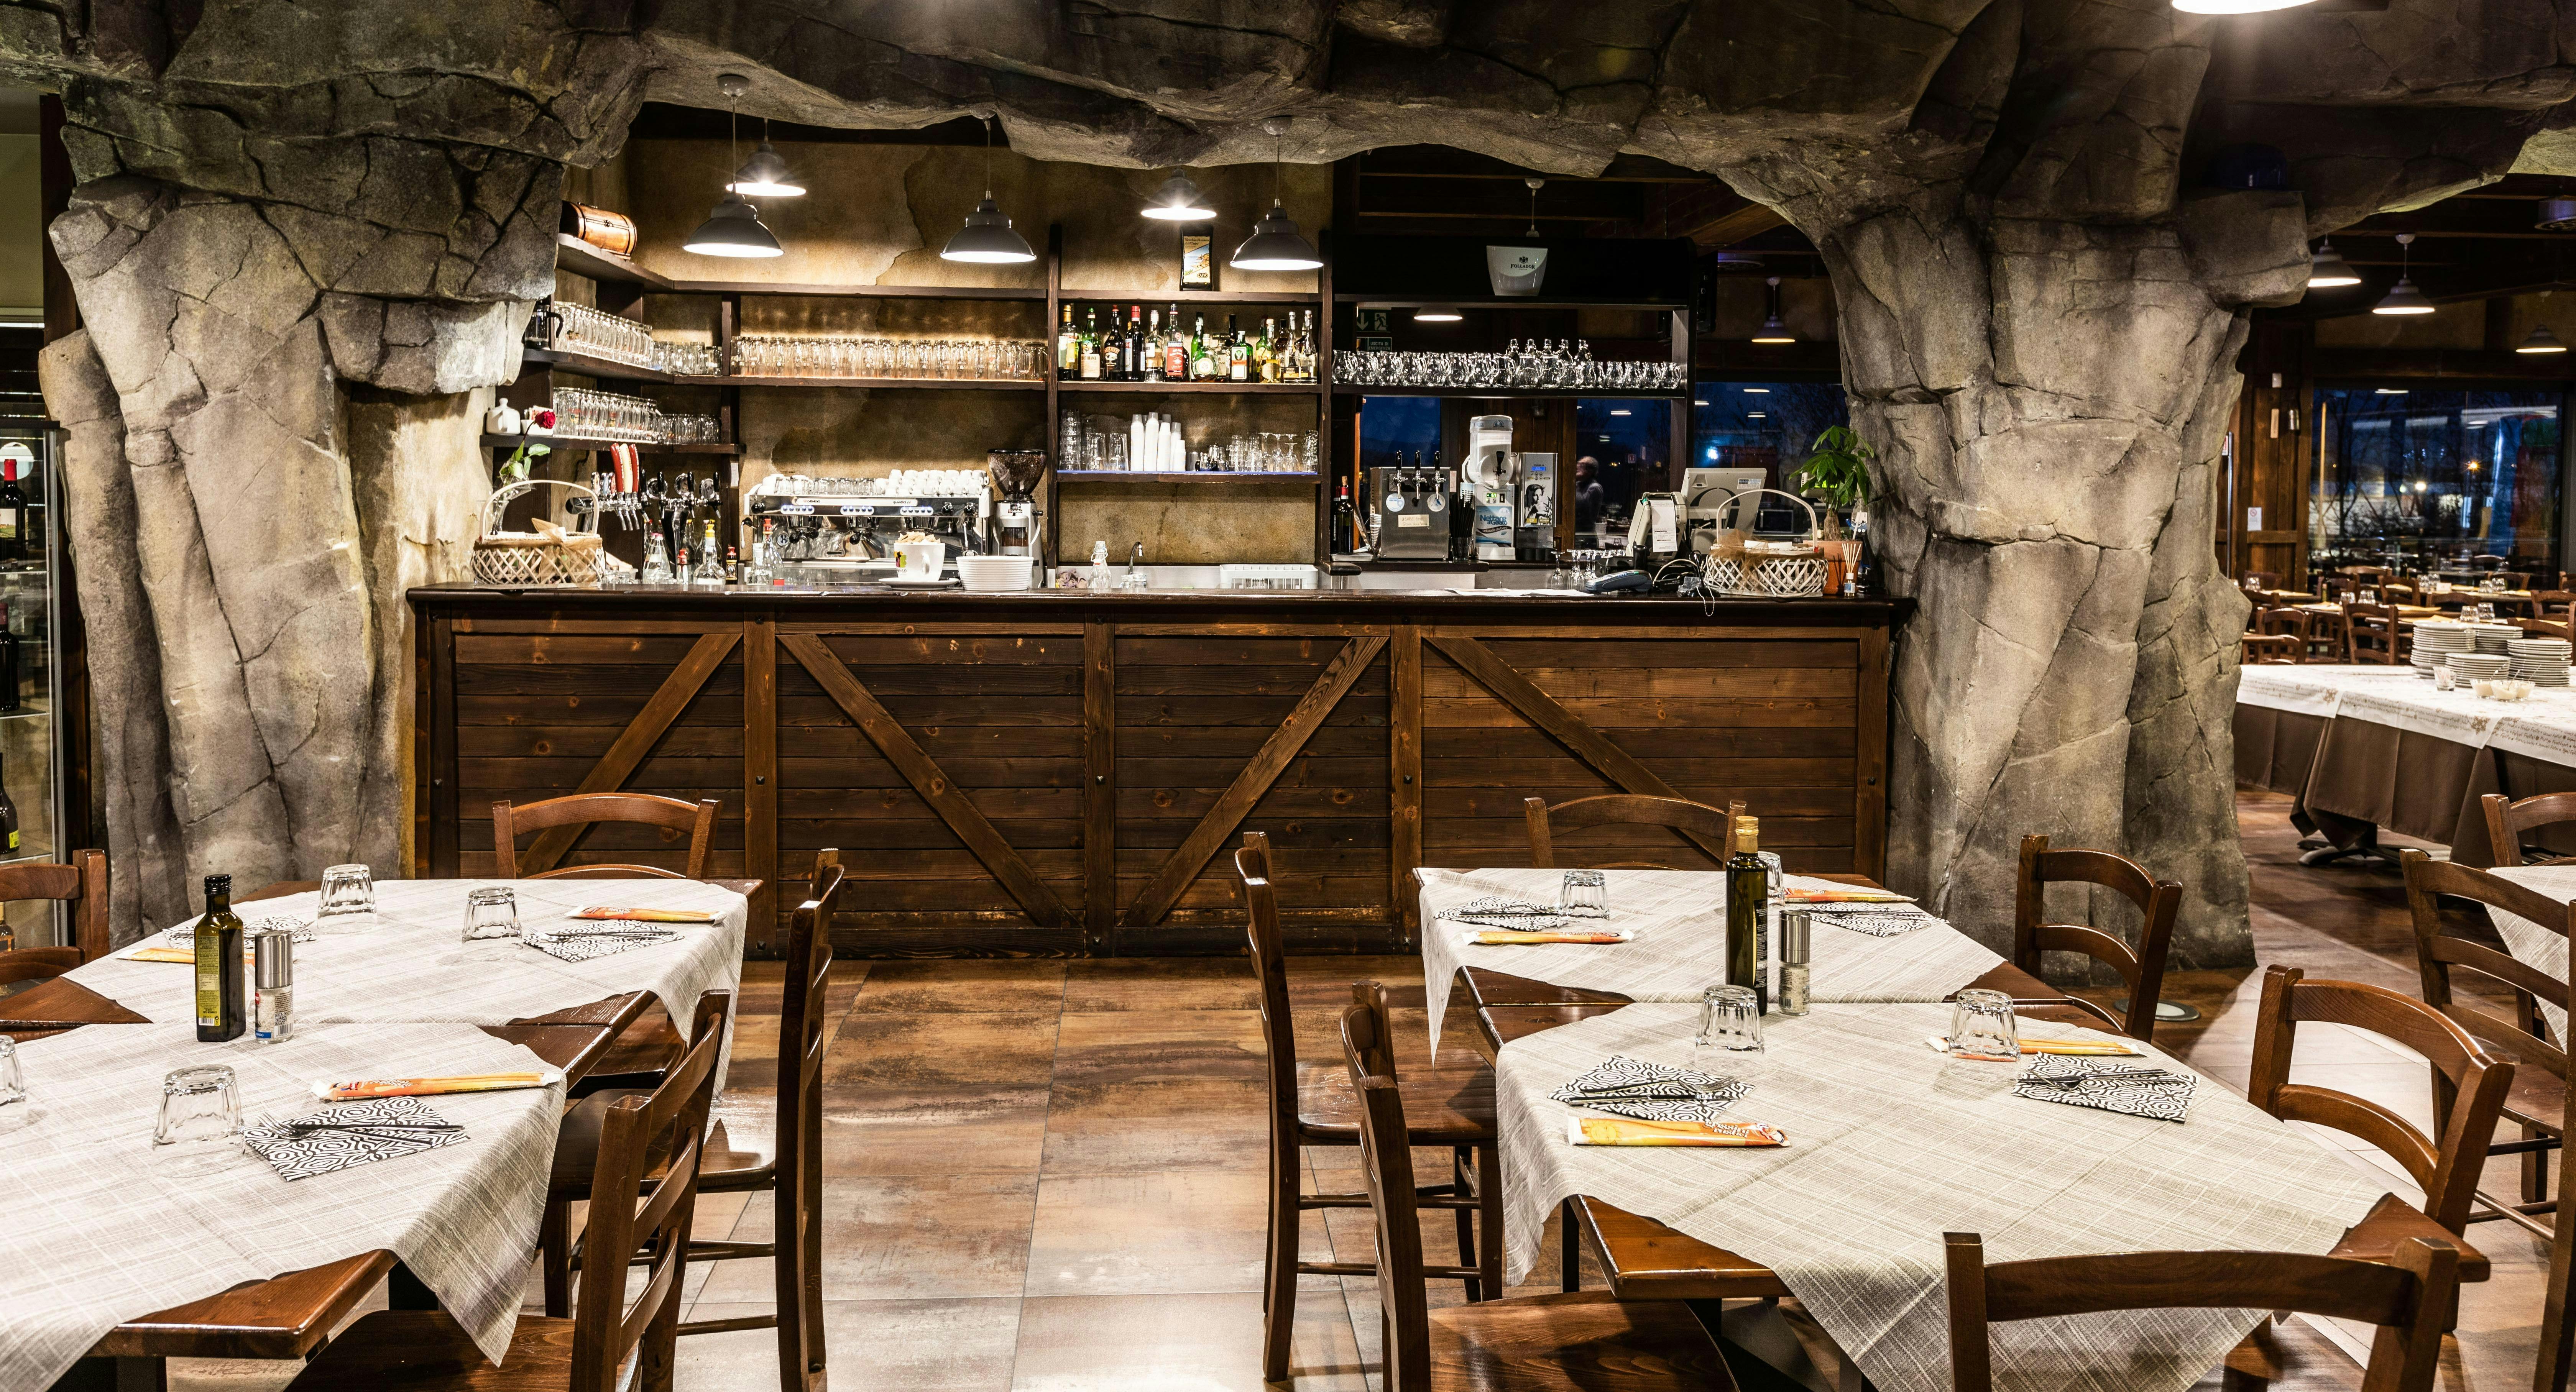 Photo of restaurant Alla Miniera da Pippo in Urgnano, Bergamo